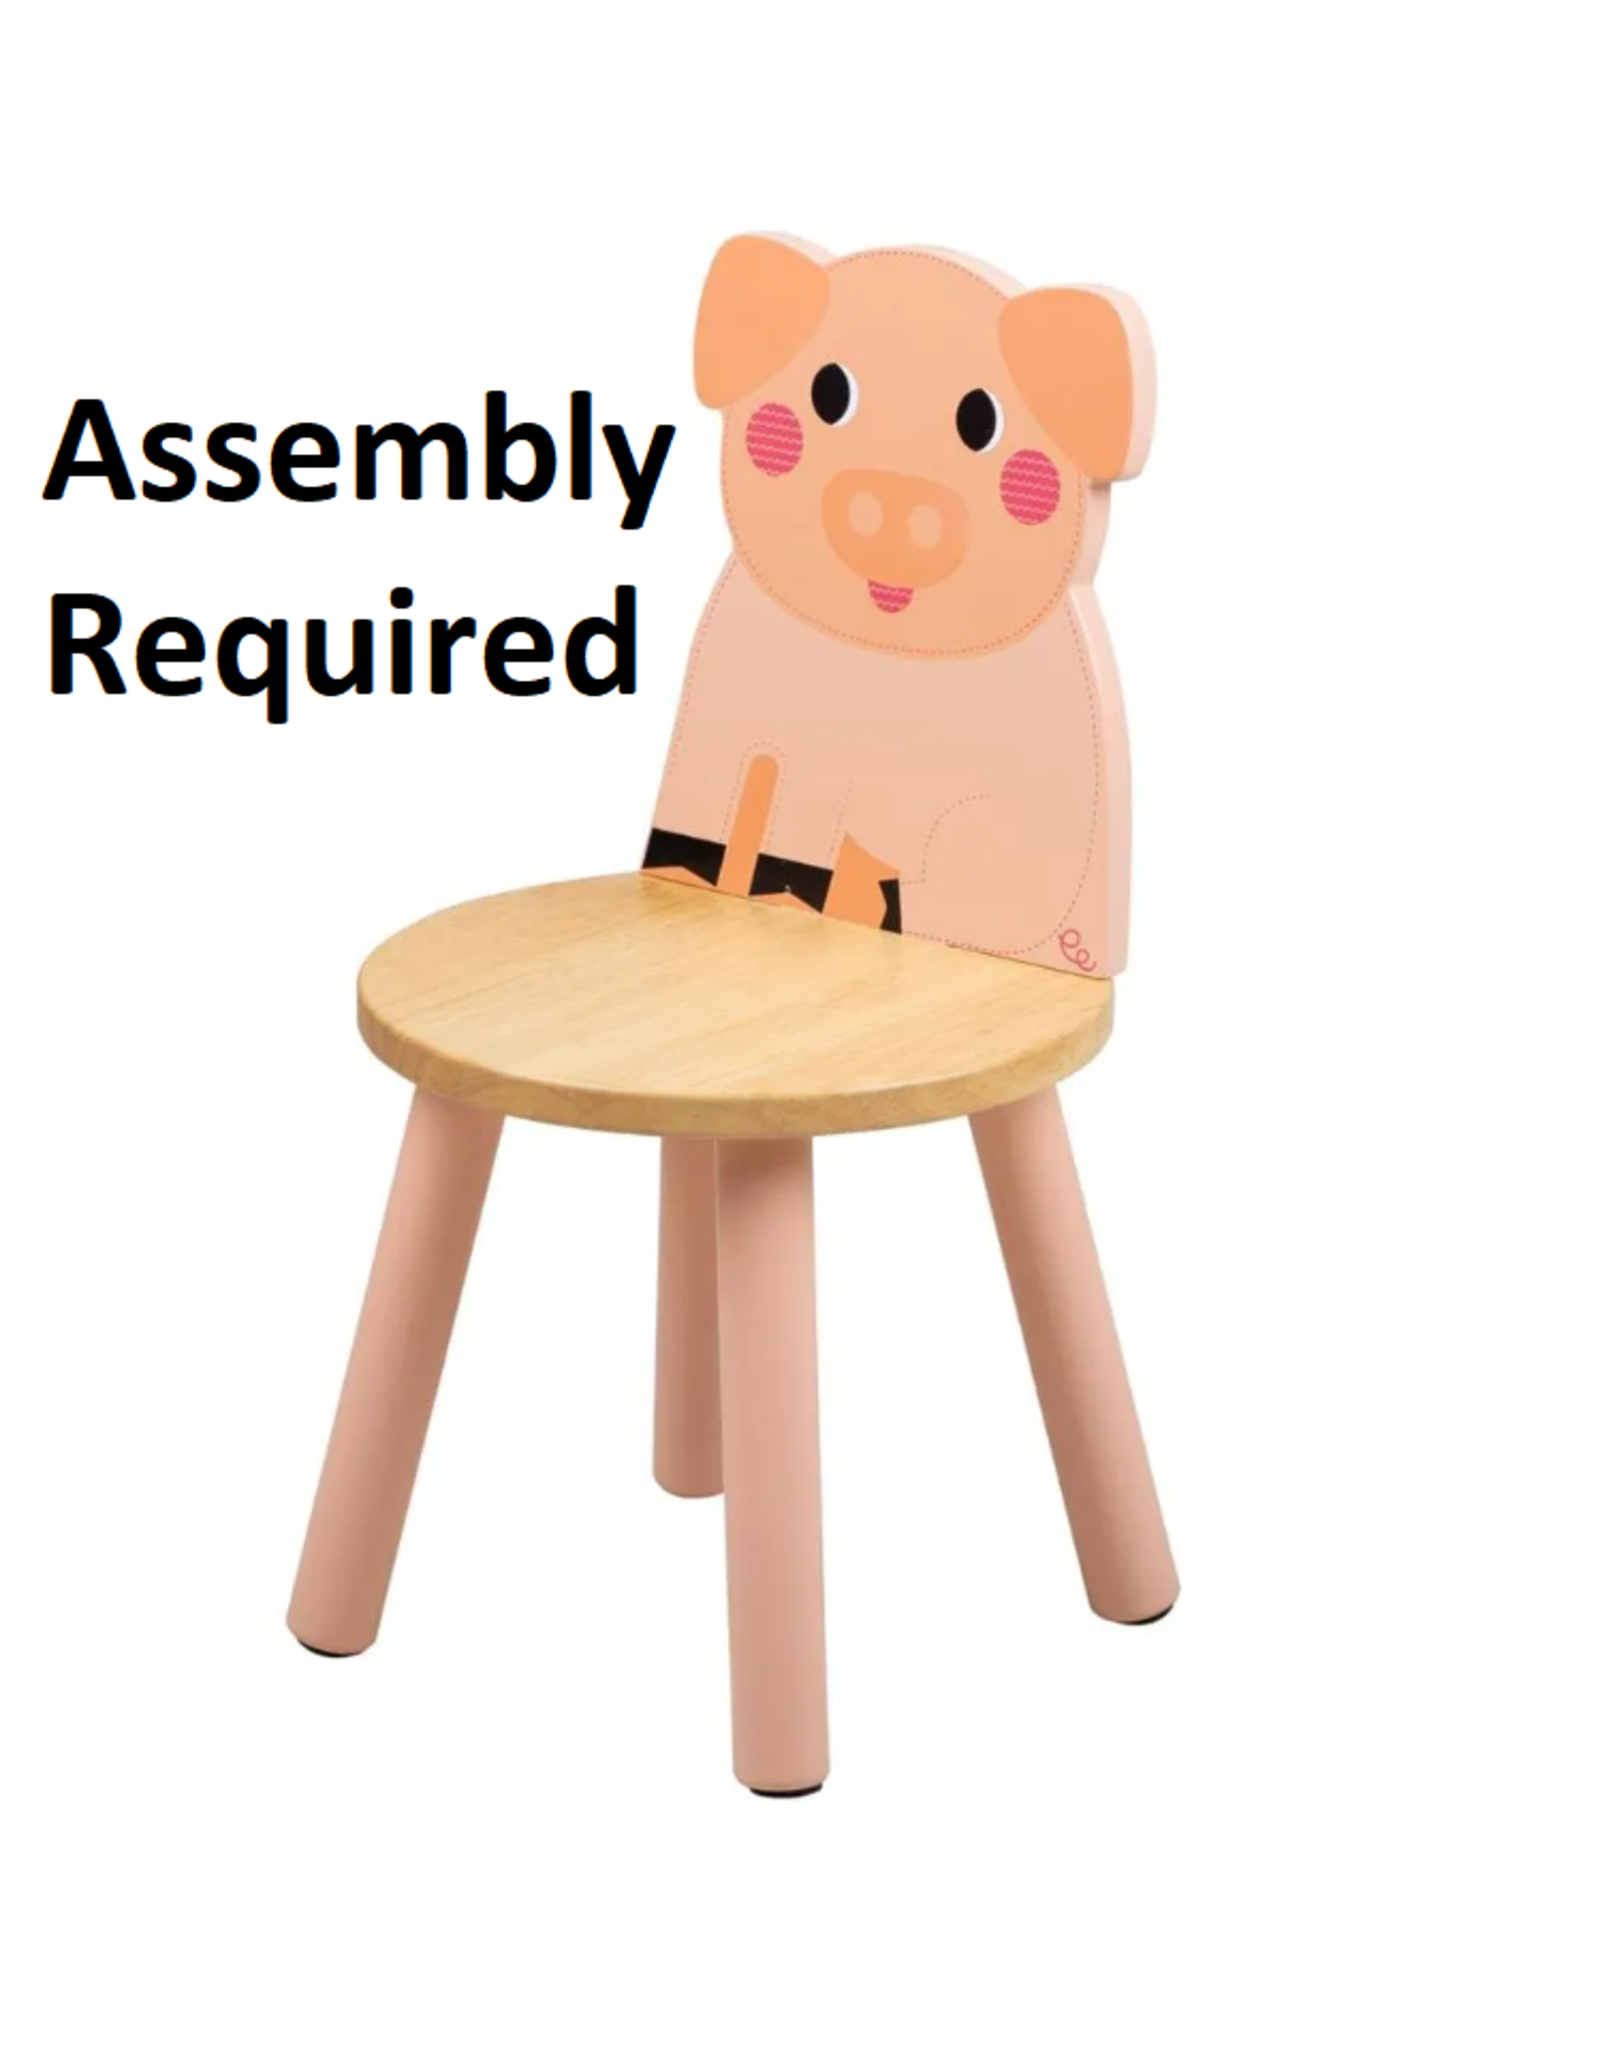 Pig Chair